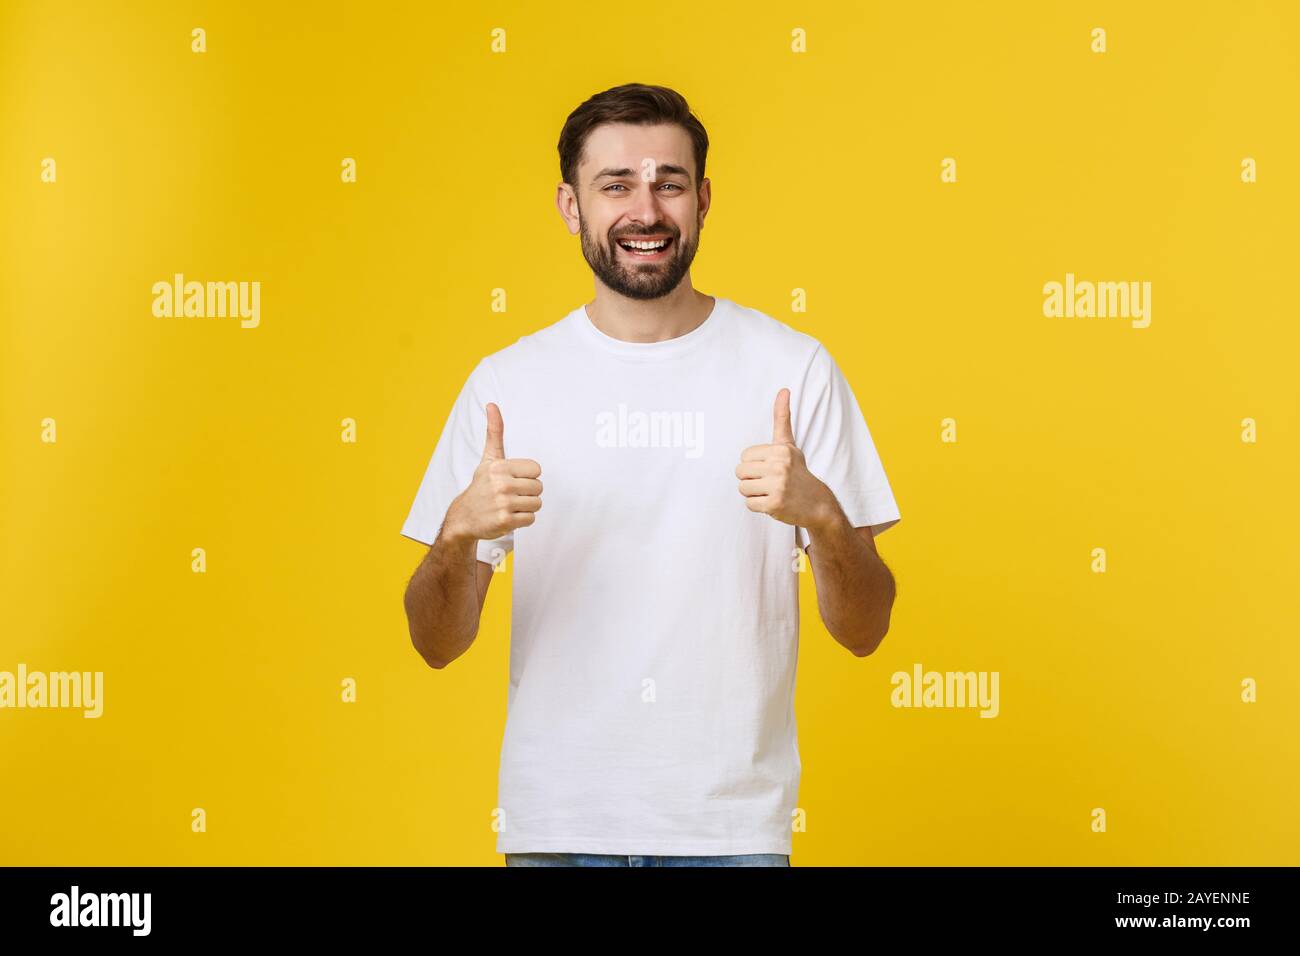 Giovane uomo felice con il pollice in alto segno in casuals isolato su sfondo giallo Foto Stock